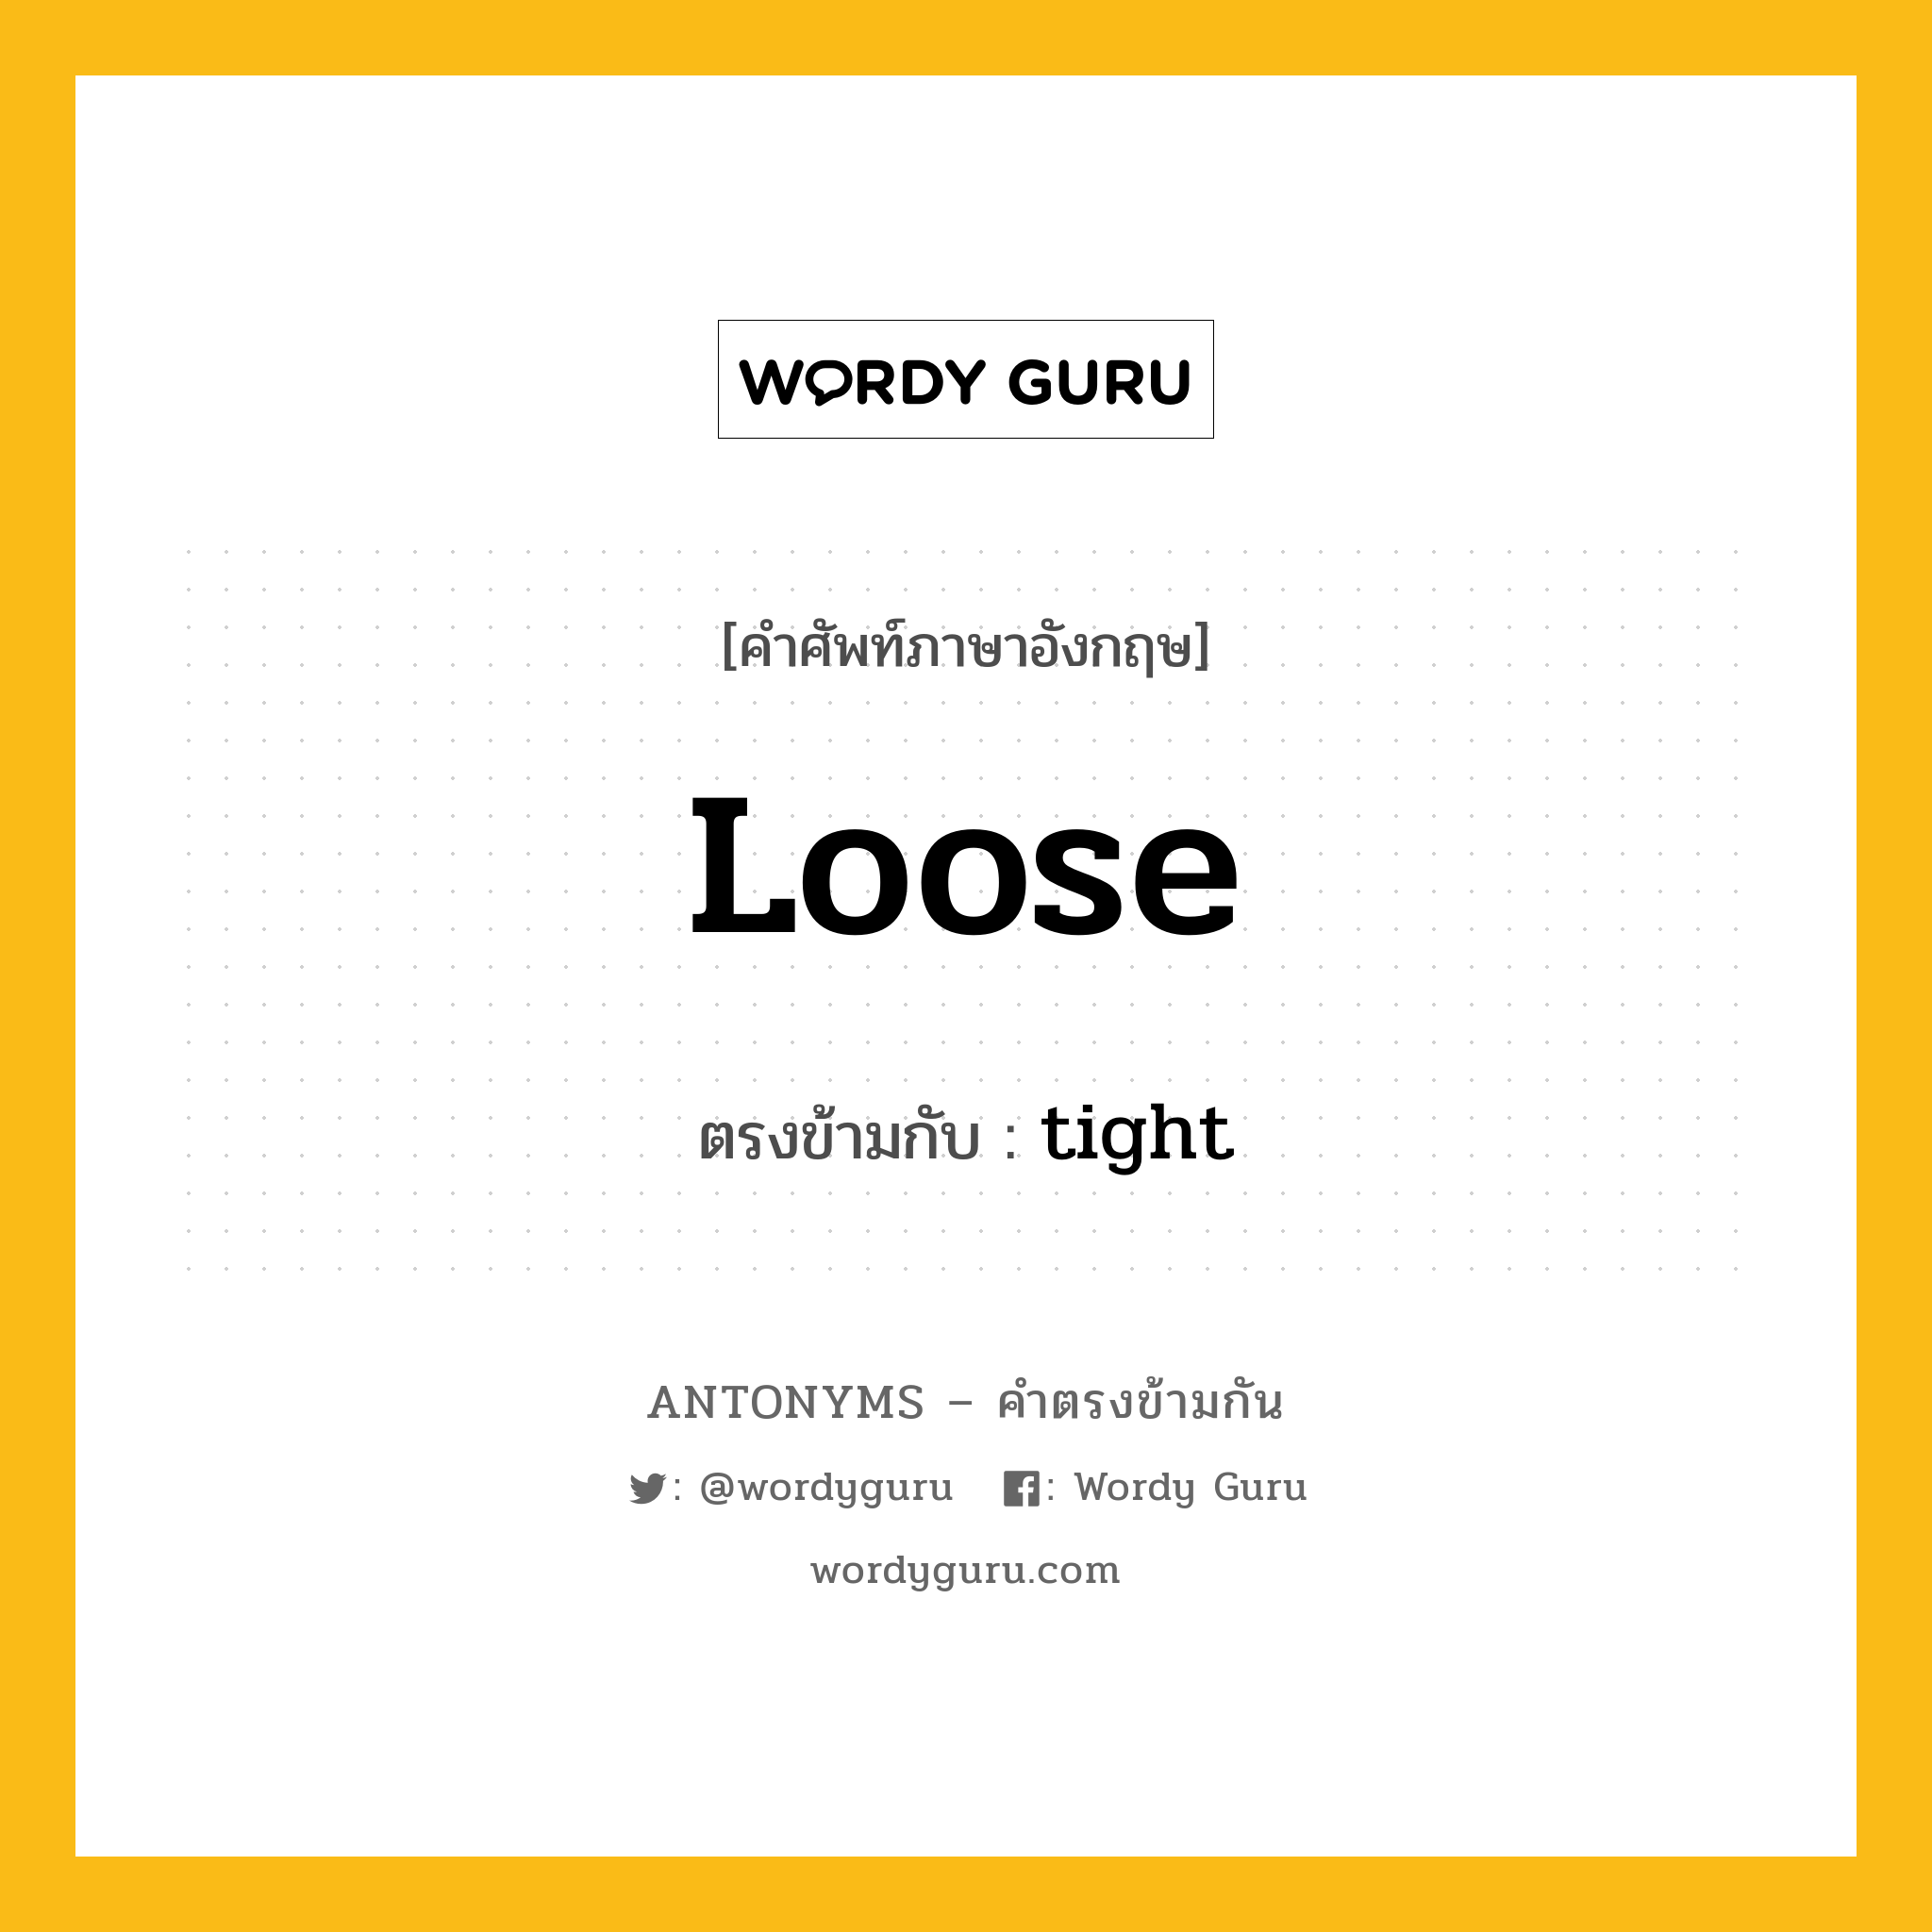 loose เป็นคำตรงข้ามกับคำไหนบ้าง?, คำศัพท์ภาษาอังกฤษ loose ตรงข้ามกับ tight หมวด tight